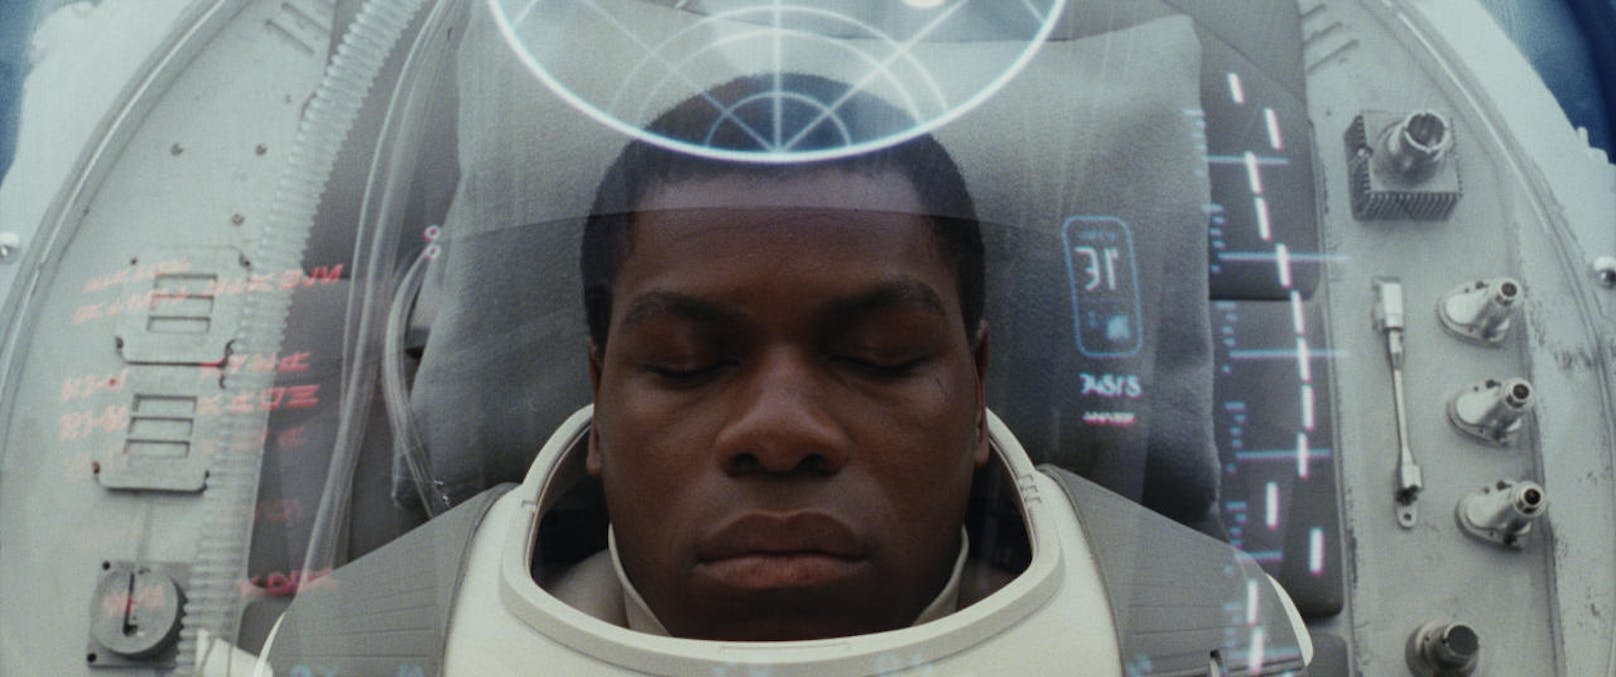 John Boyega in "Star Wars Episode VIII: The Last Jedi"